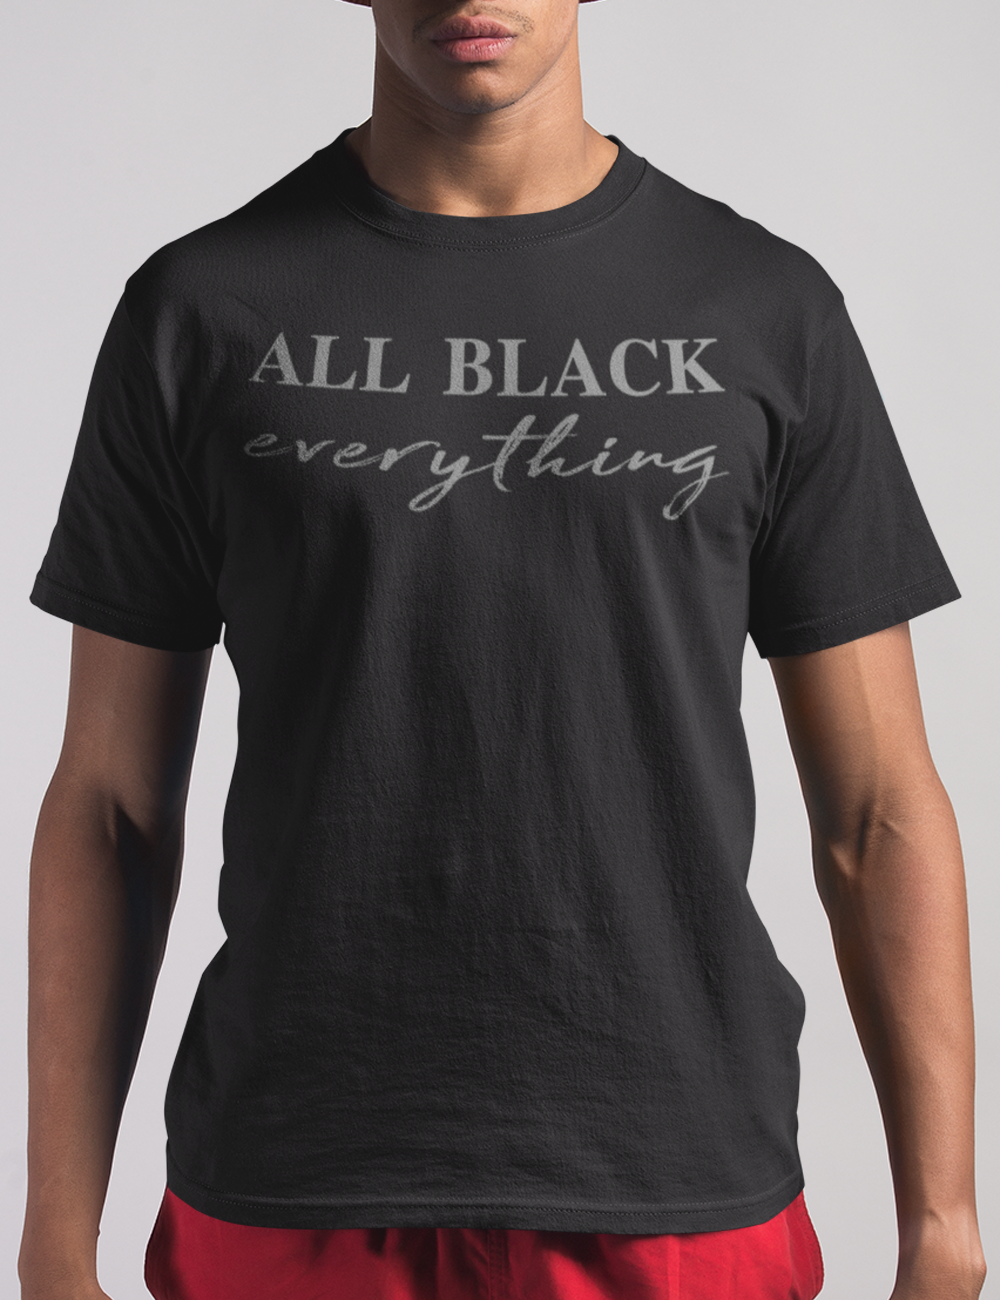 All Black Everything | T-Shirt OniTakai